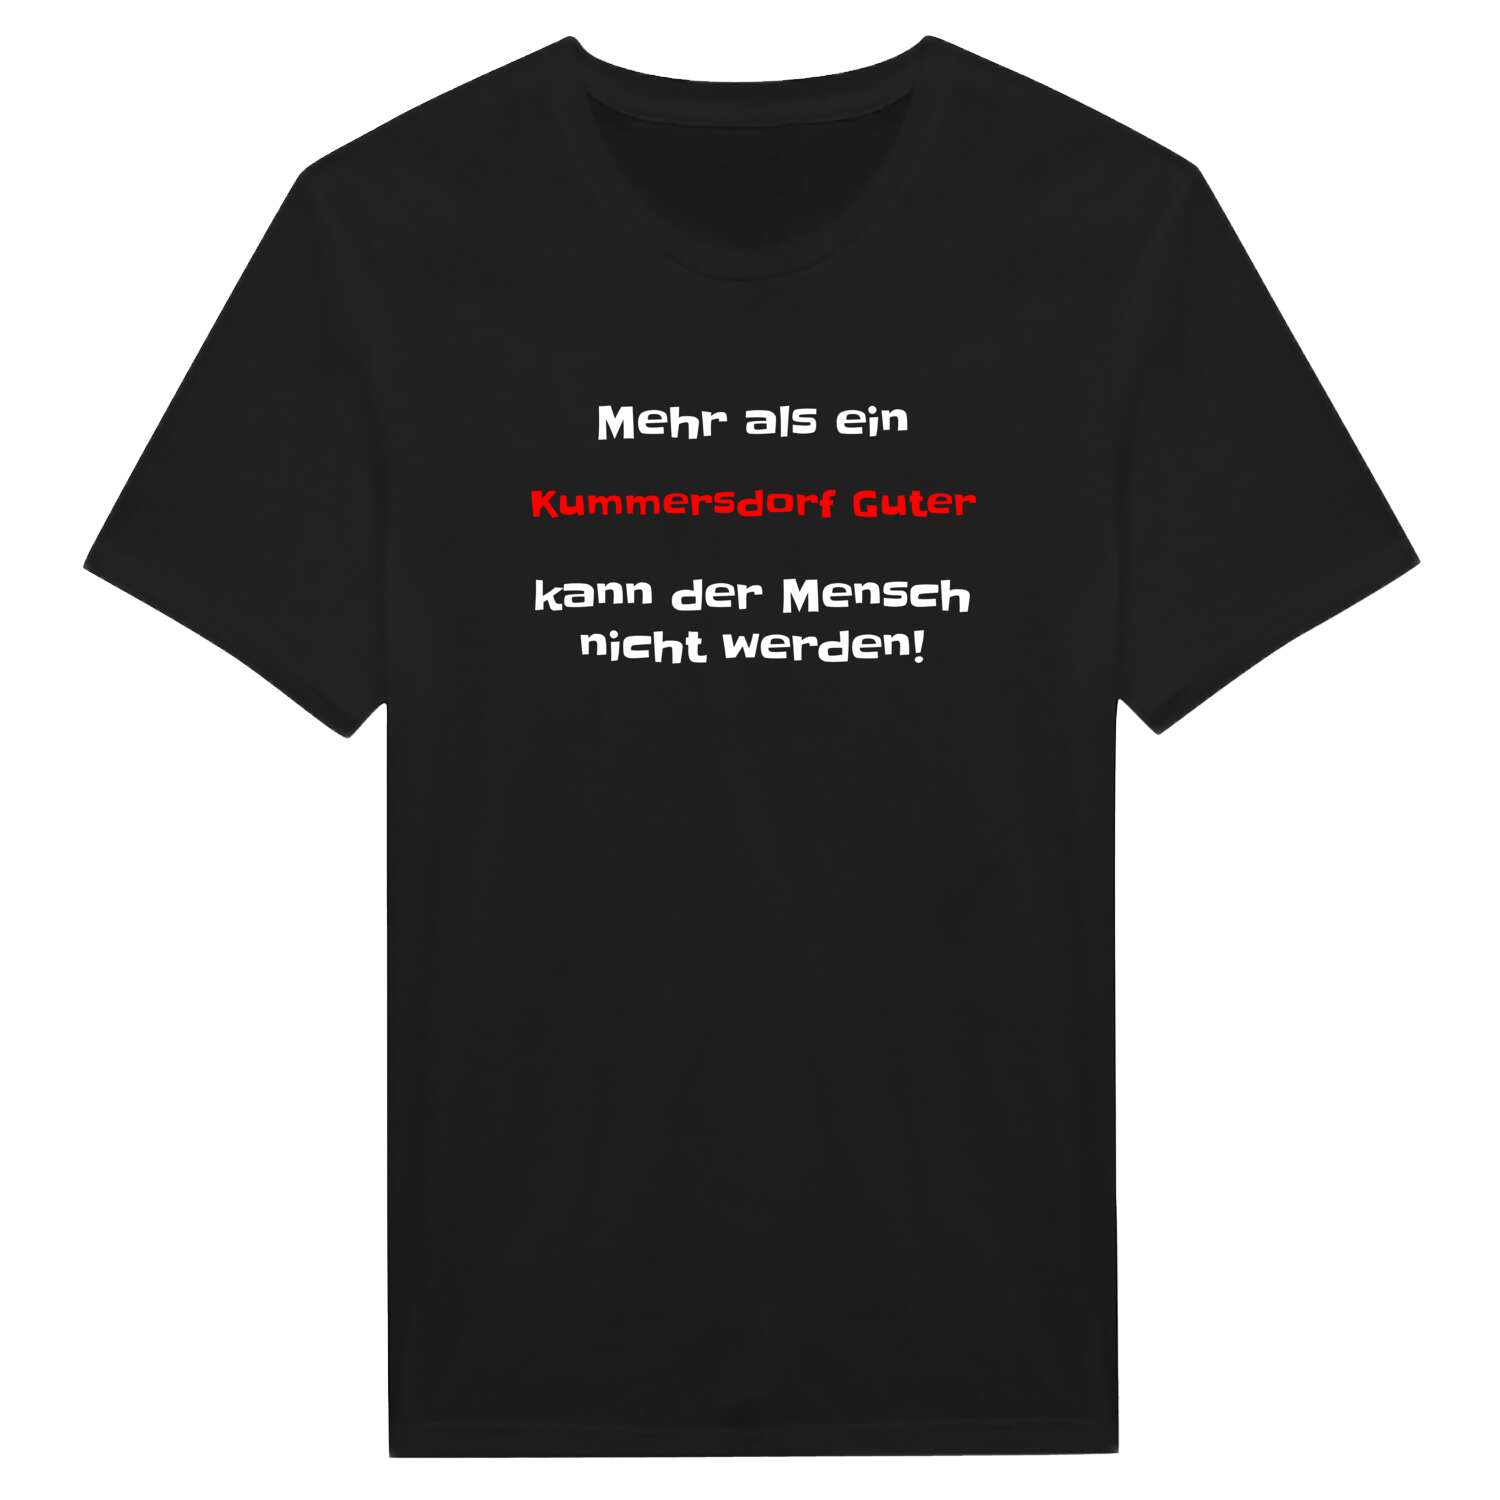 Kummersdorf Gut T-Shirt »Mehr als ein«